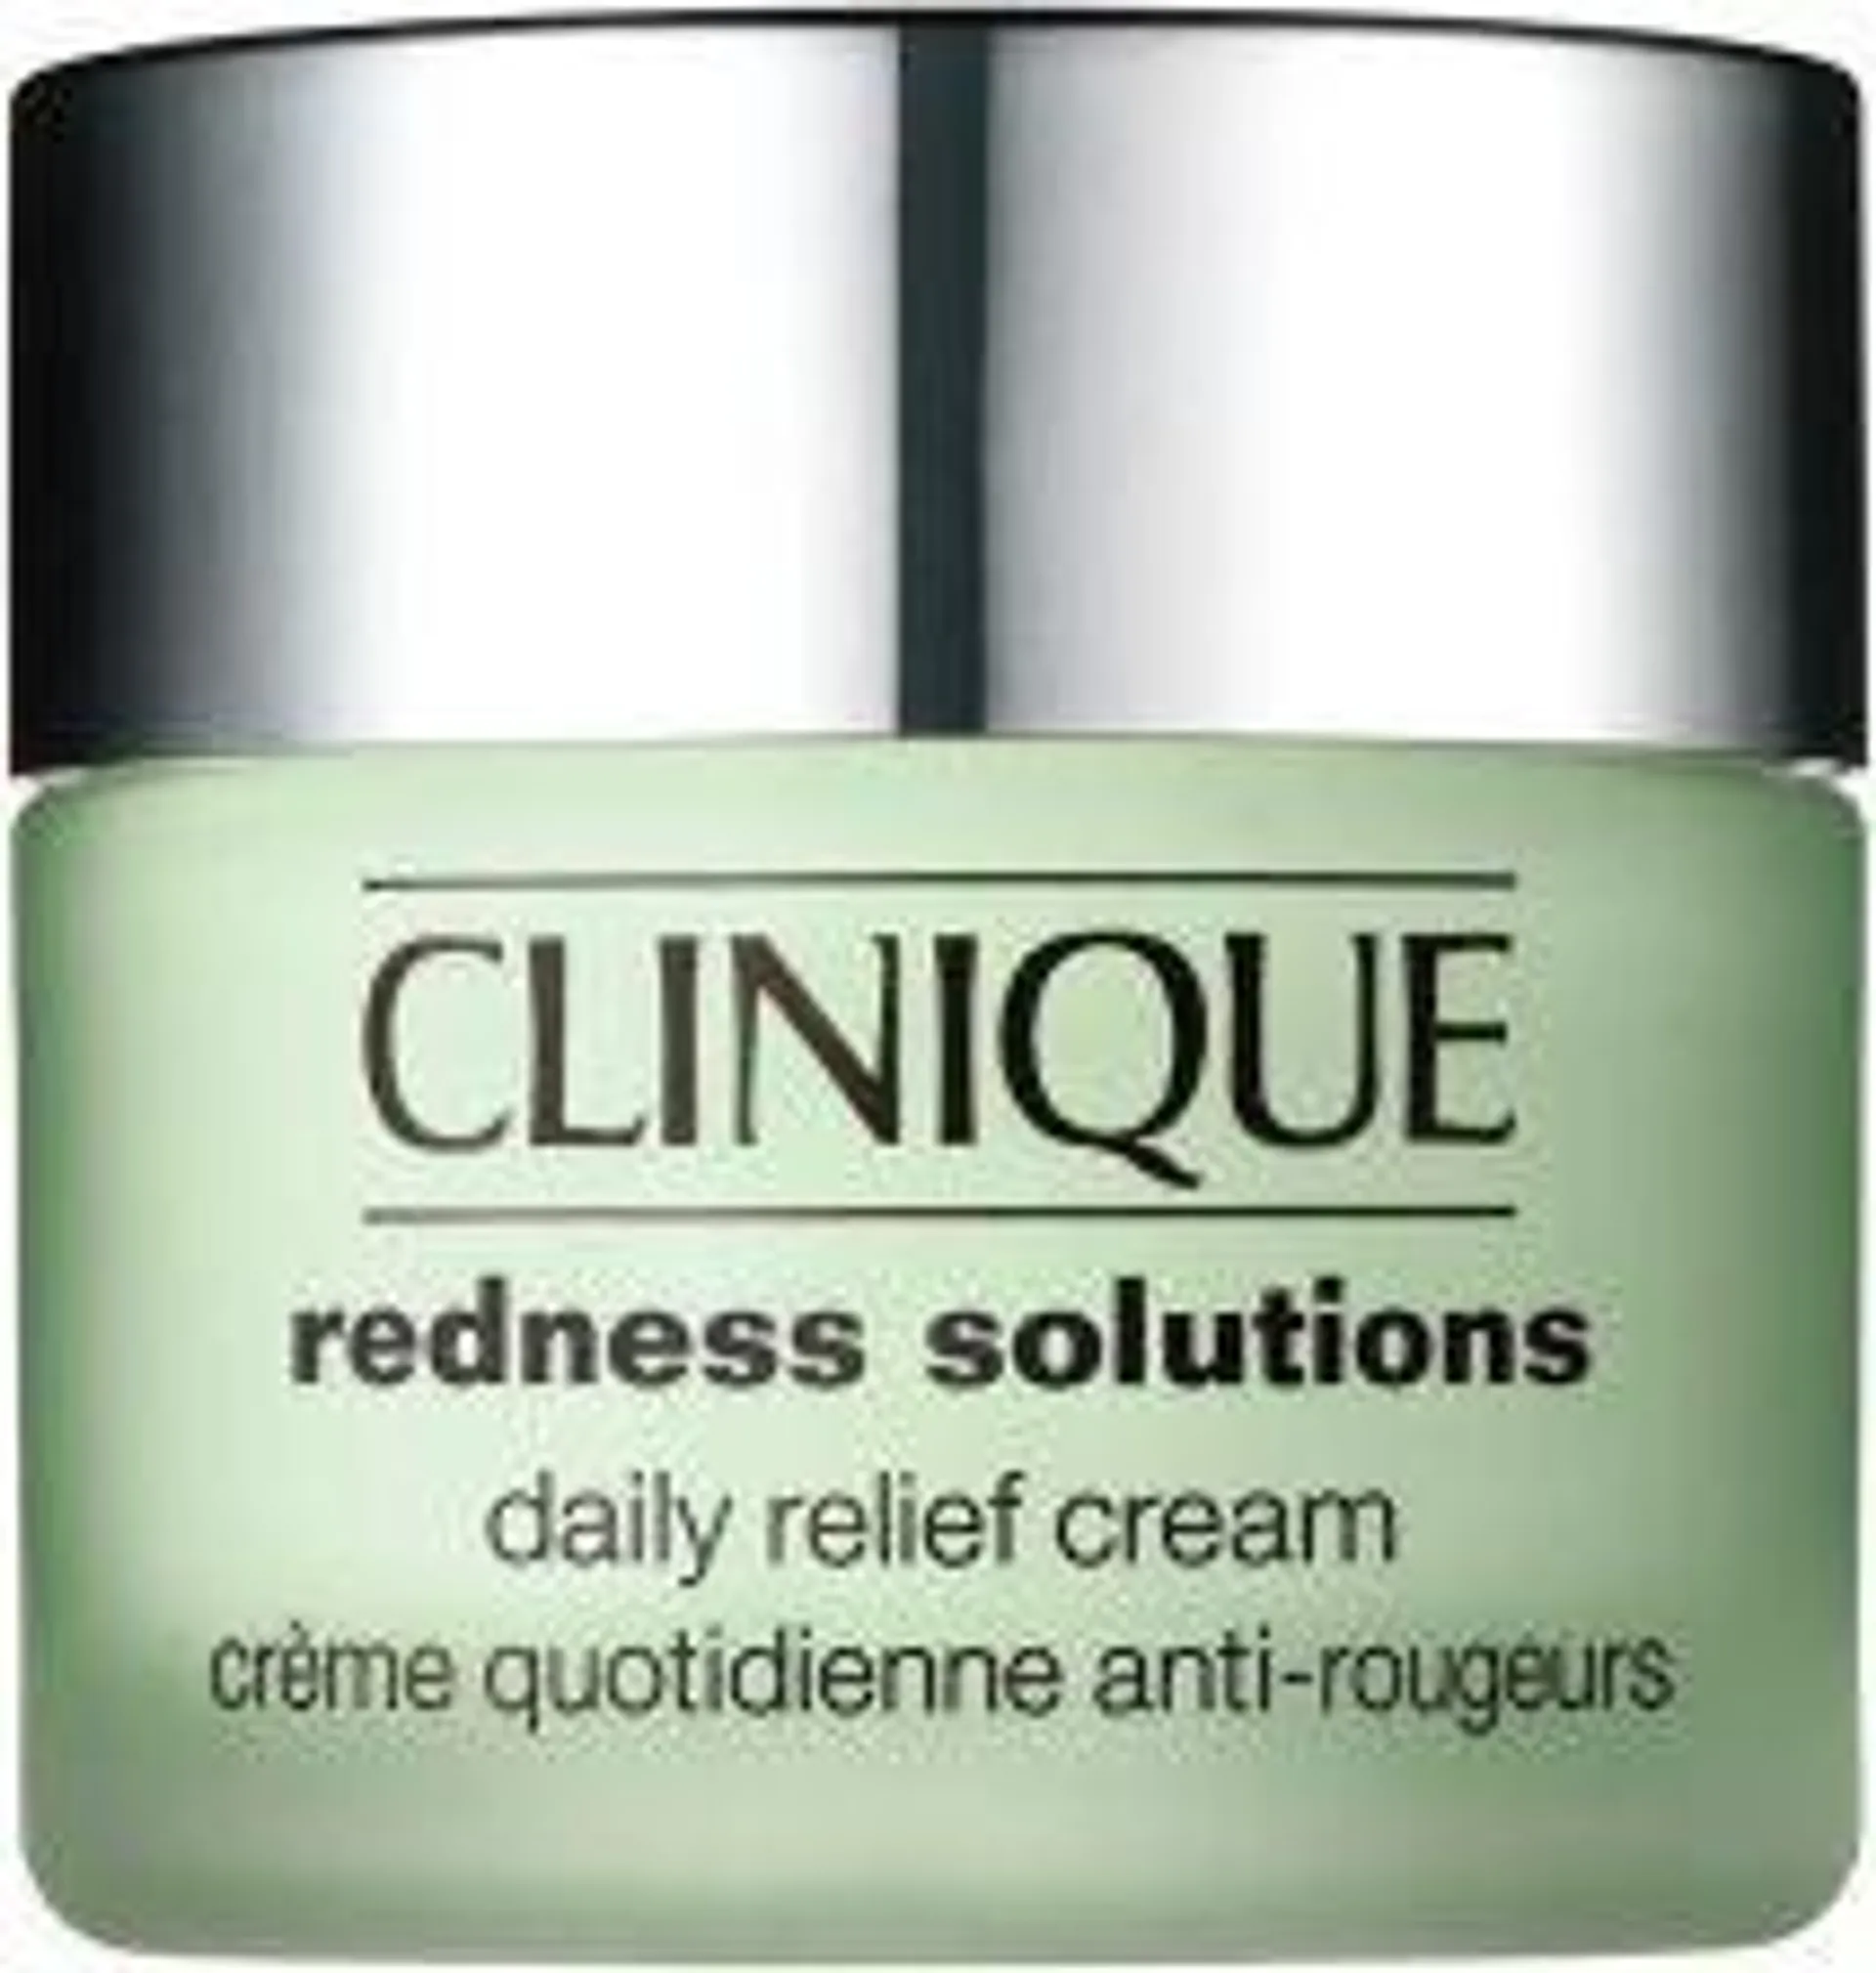 Clinique Redness Solutions Daily Relief Cream Krem do twarzy do wszystkich typów skóry Tester 50ml